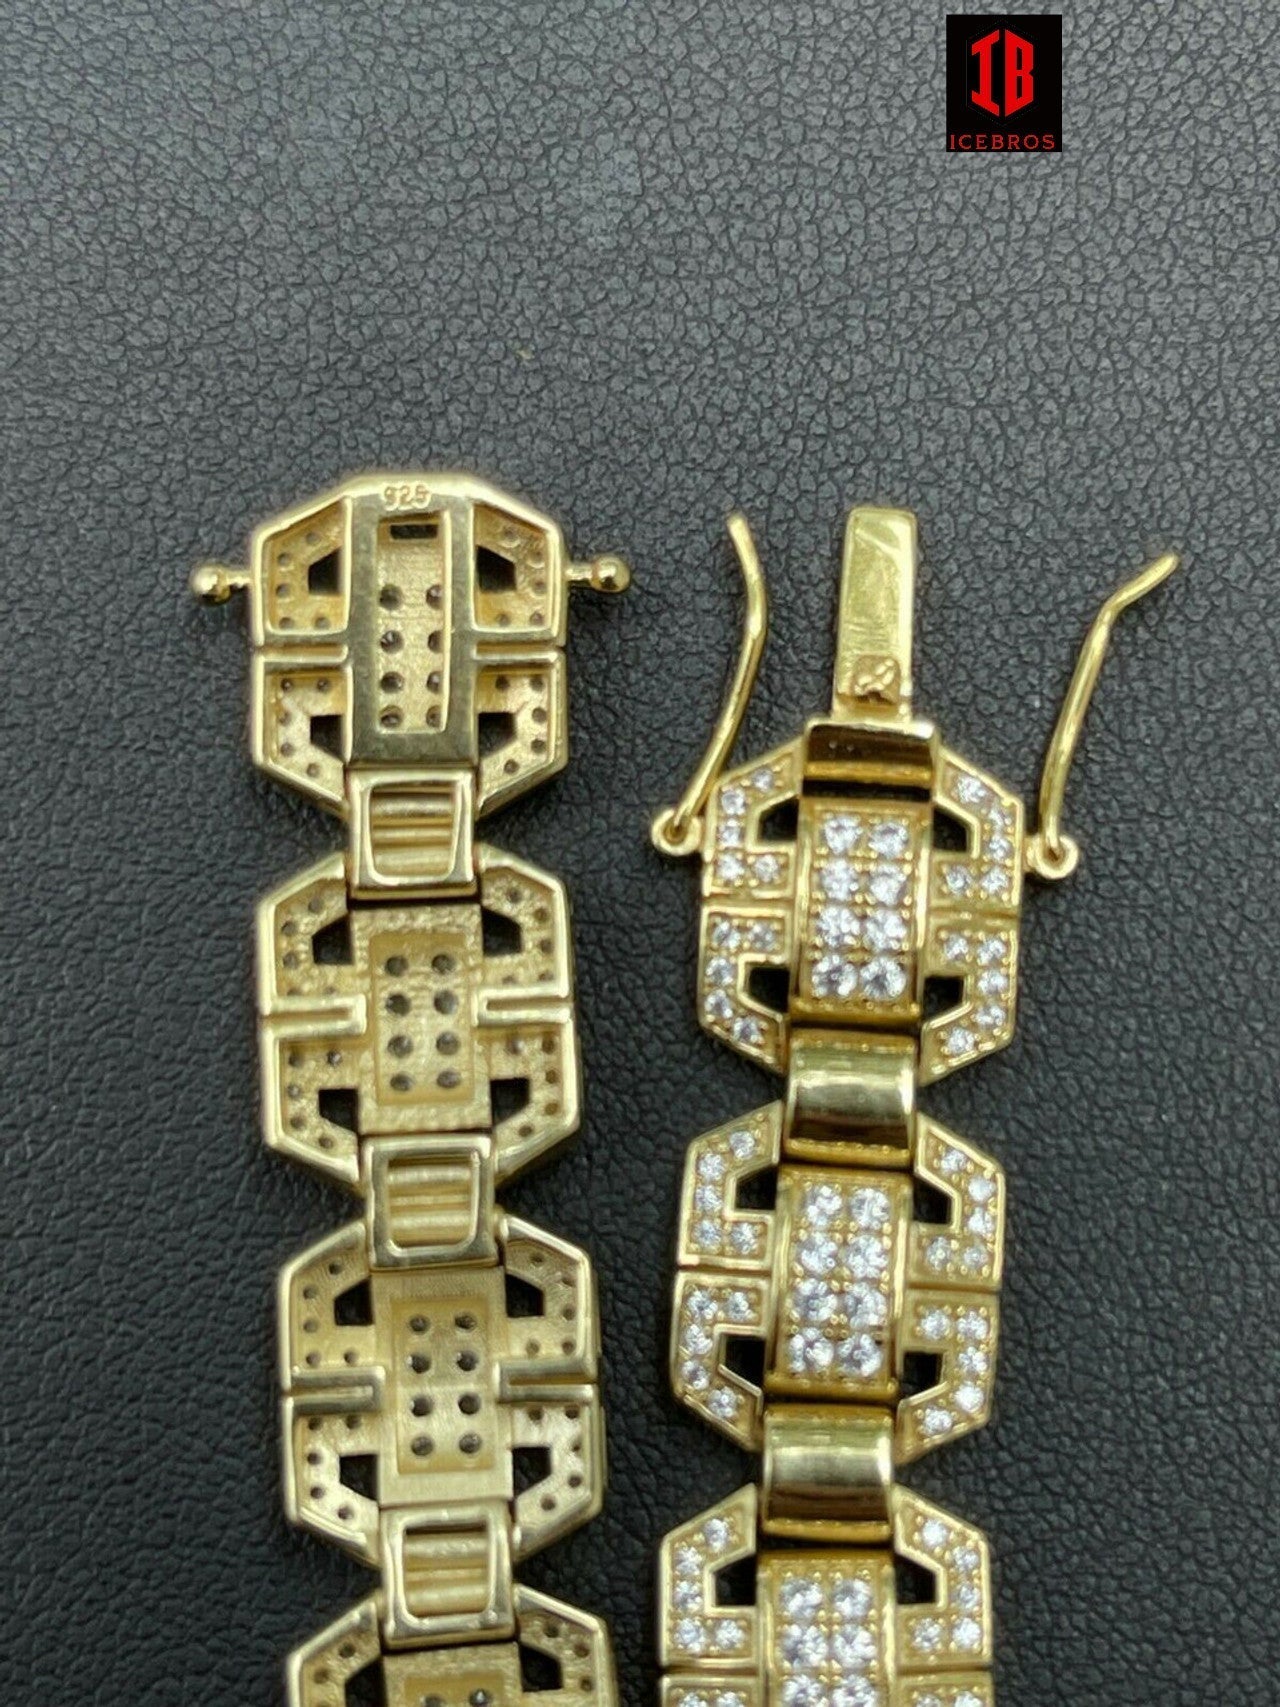 White Gold Custom Link Moissanite Diamond Tennis Bracelet 11mm